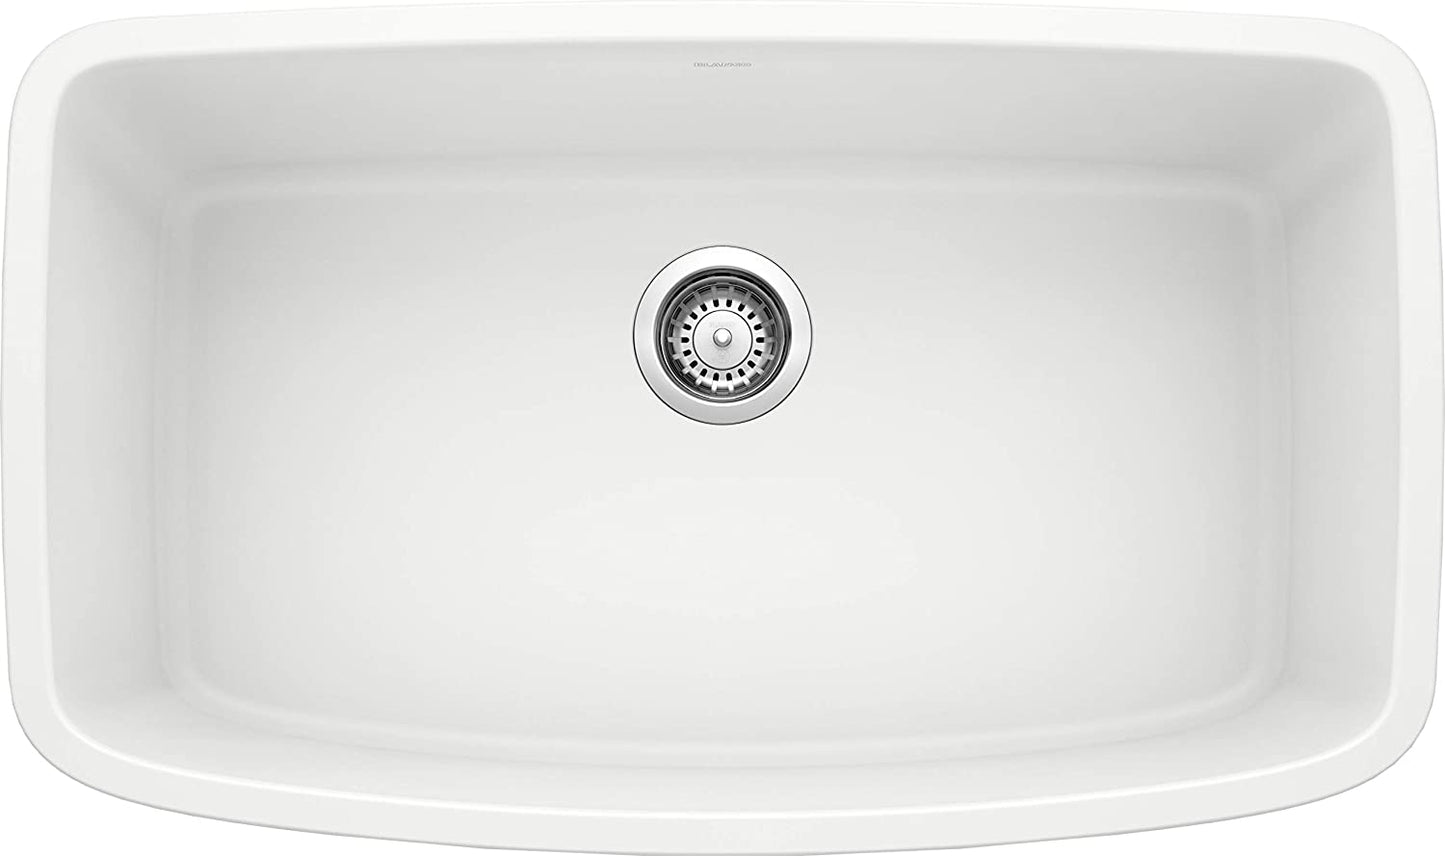 Valea Super Single Bowl Undermount Kitchen Sink, 32" X 19"- White